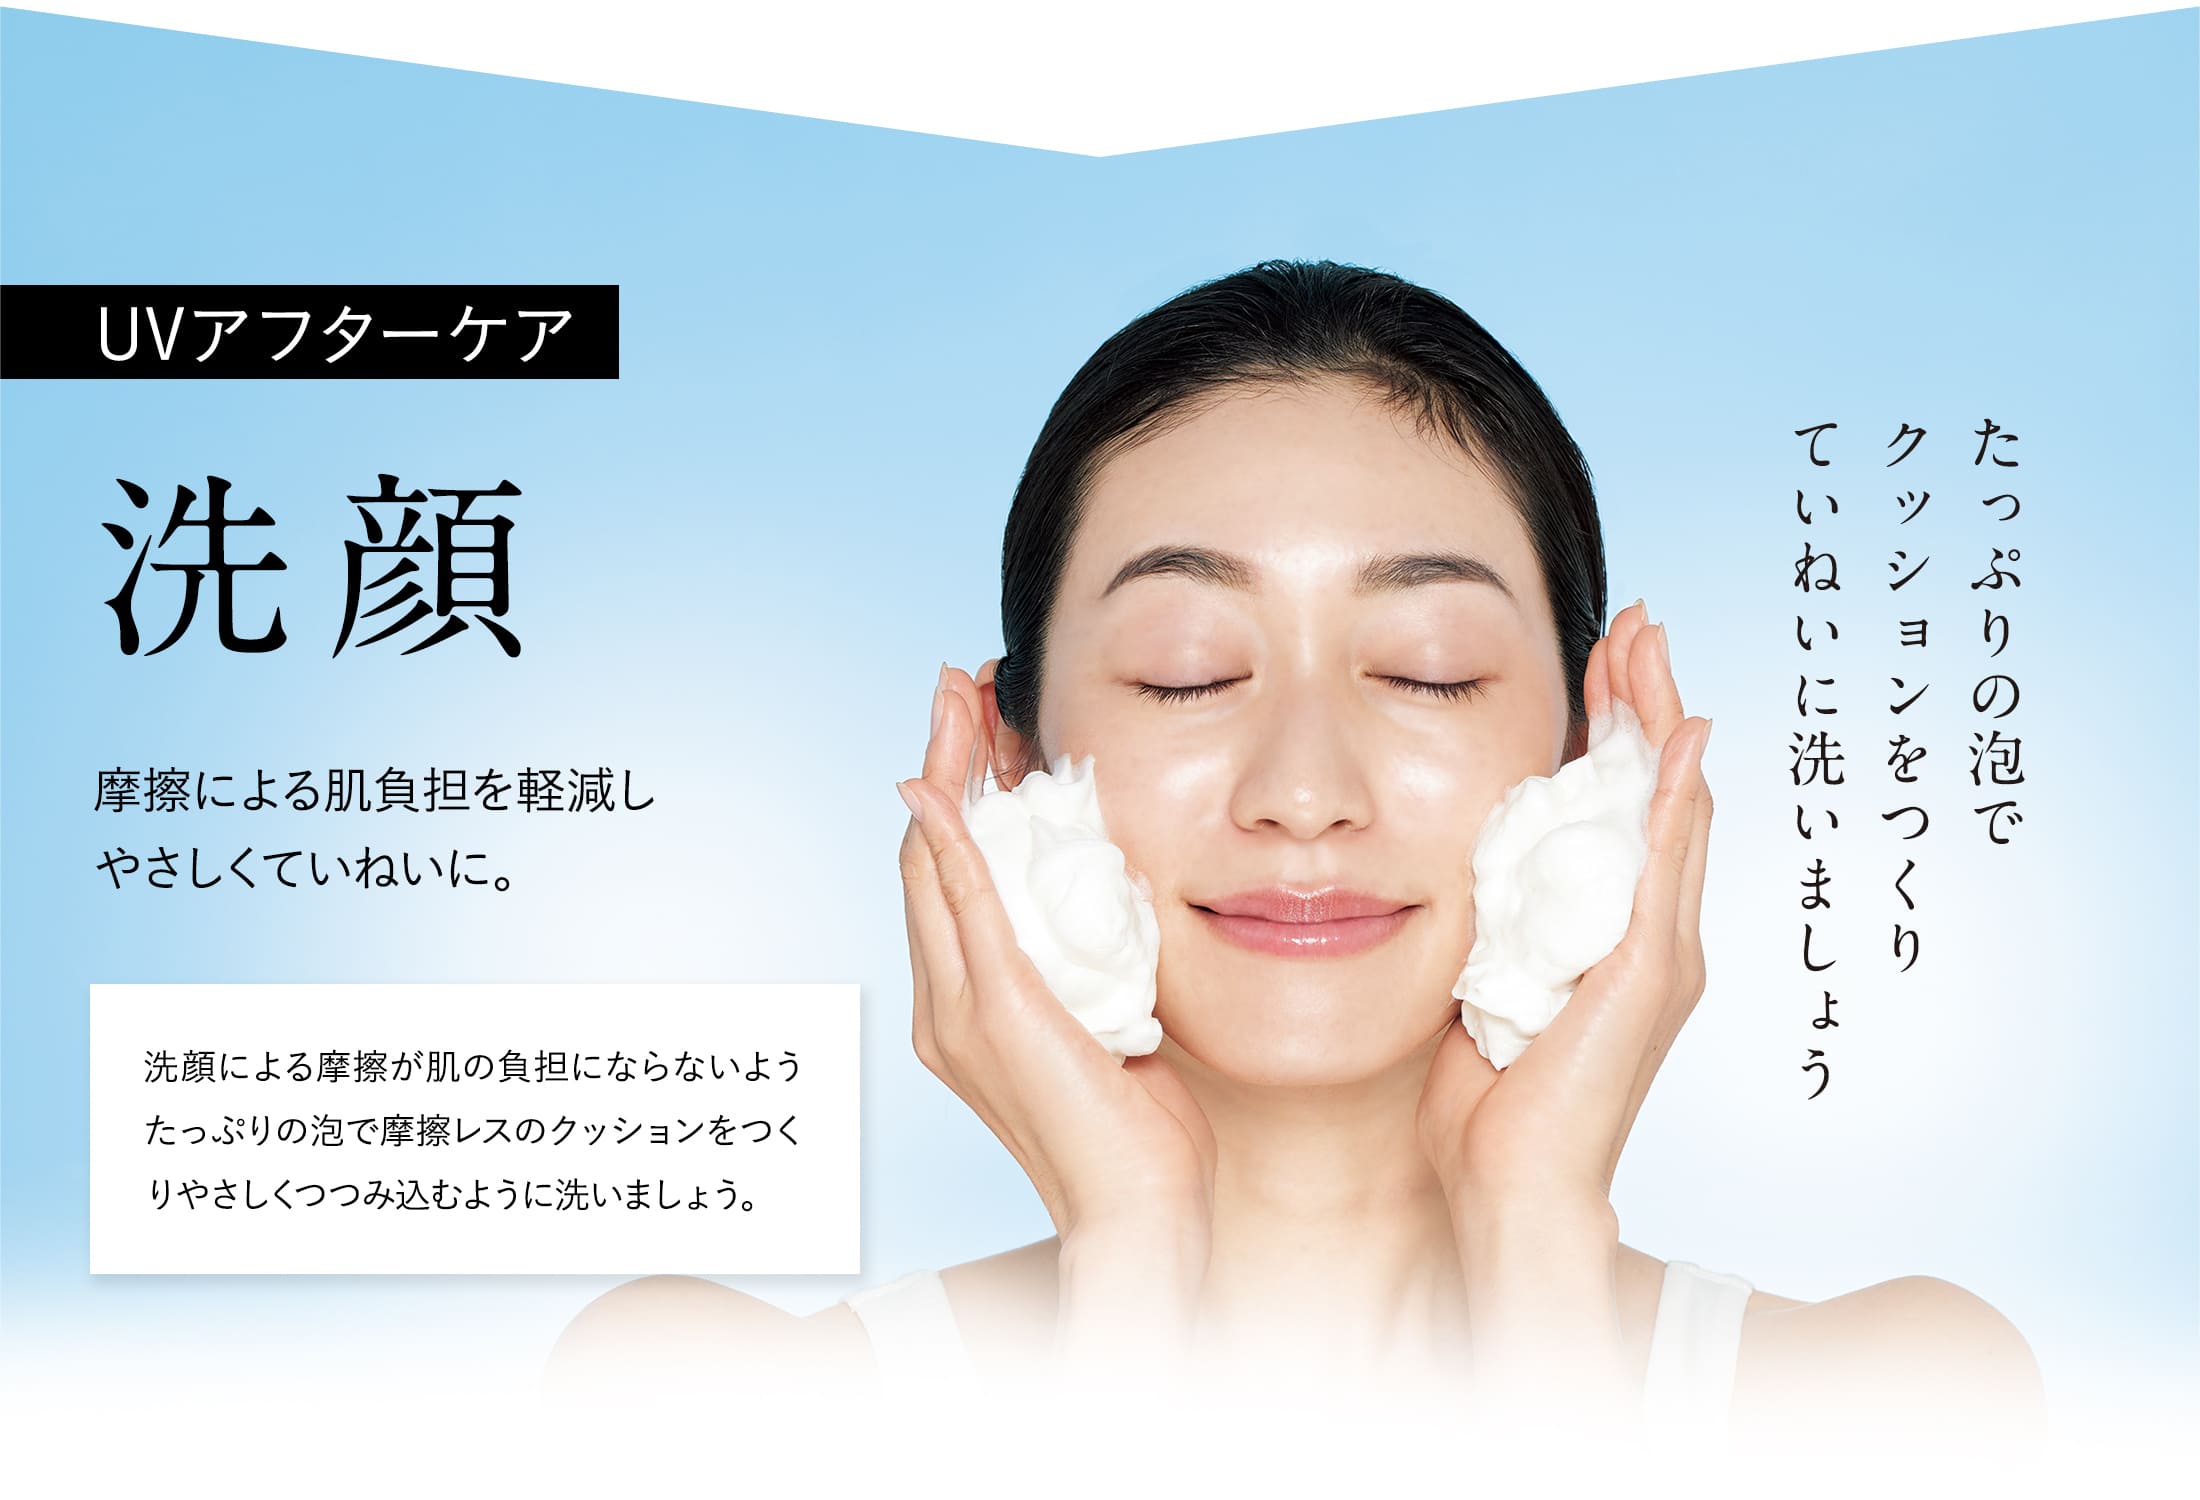 【UVアフターケア：洗顔】摩擦による肌負担を軽減しやさしくていねいに。洗顔による摩擦が肌の負担にならないようたっぷりの泡で摩擦レスのクッションをつくりやさしくつつみ込むように洗いましょう。